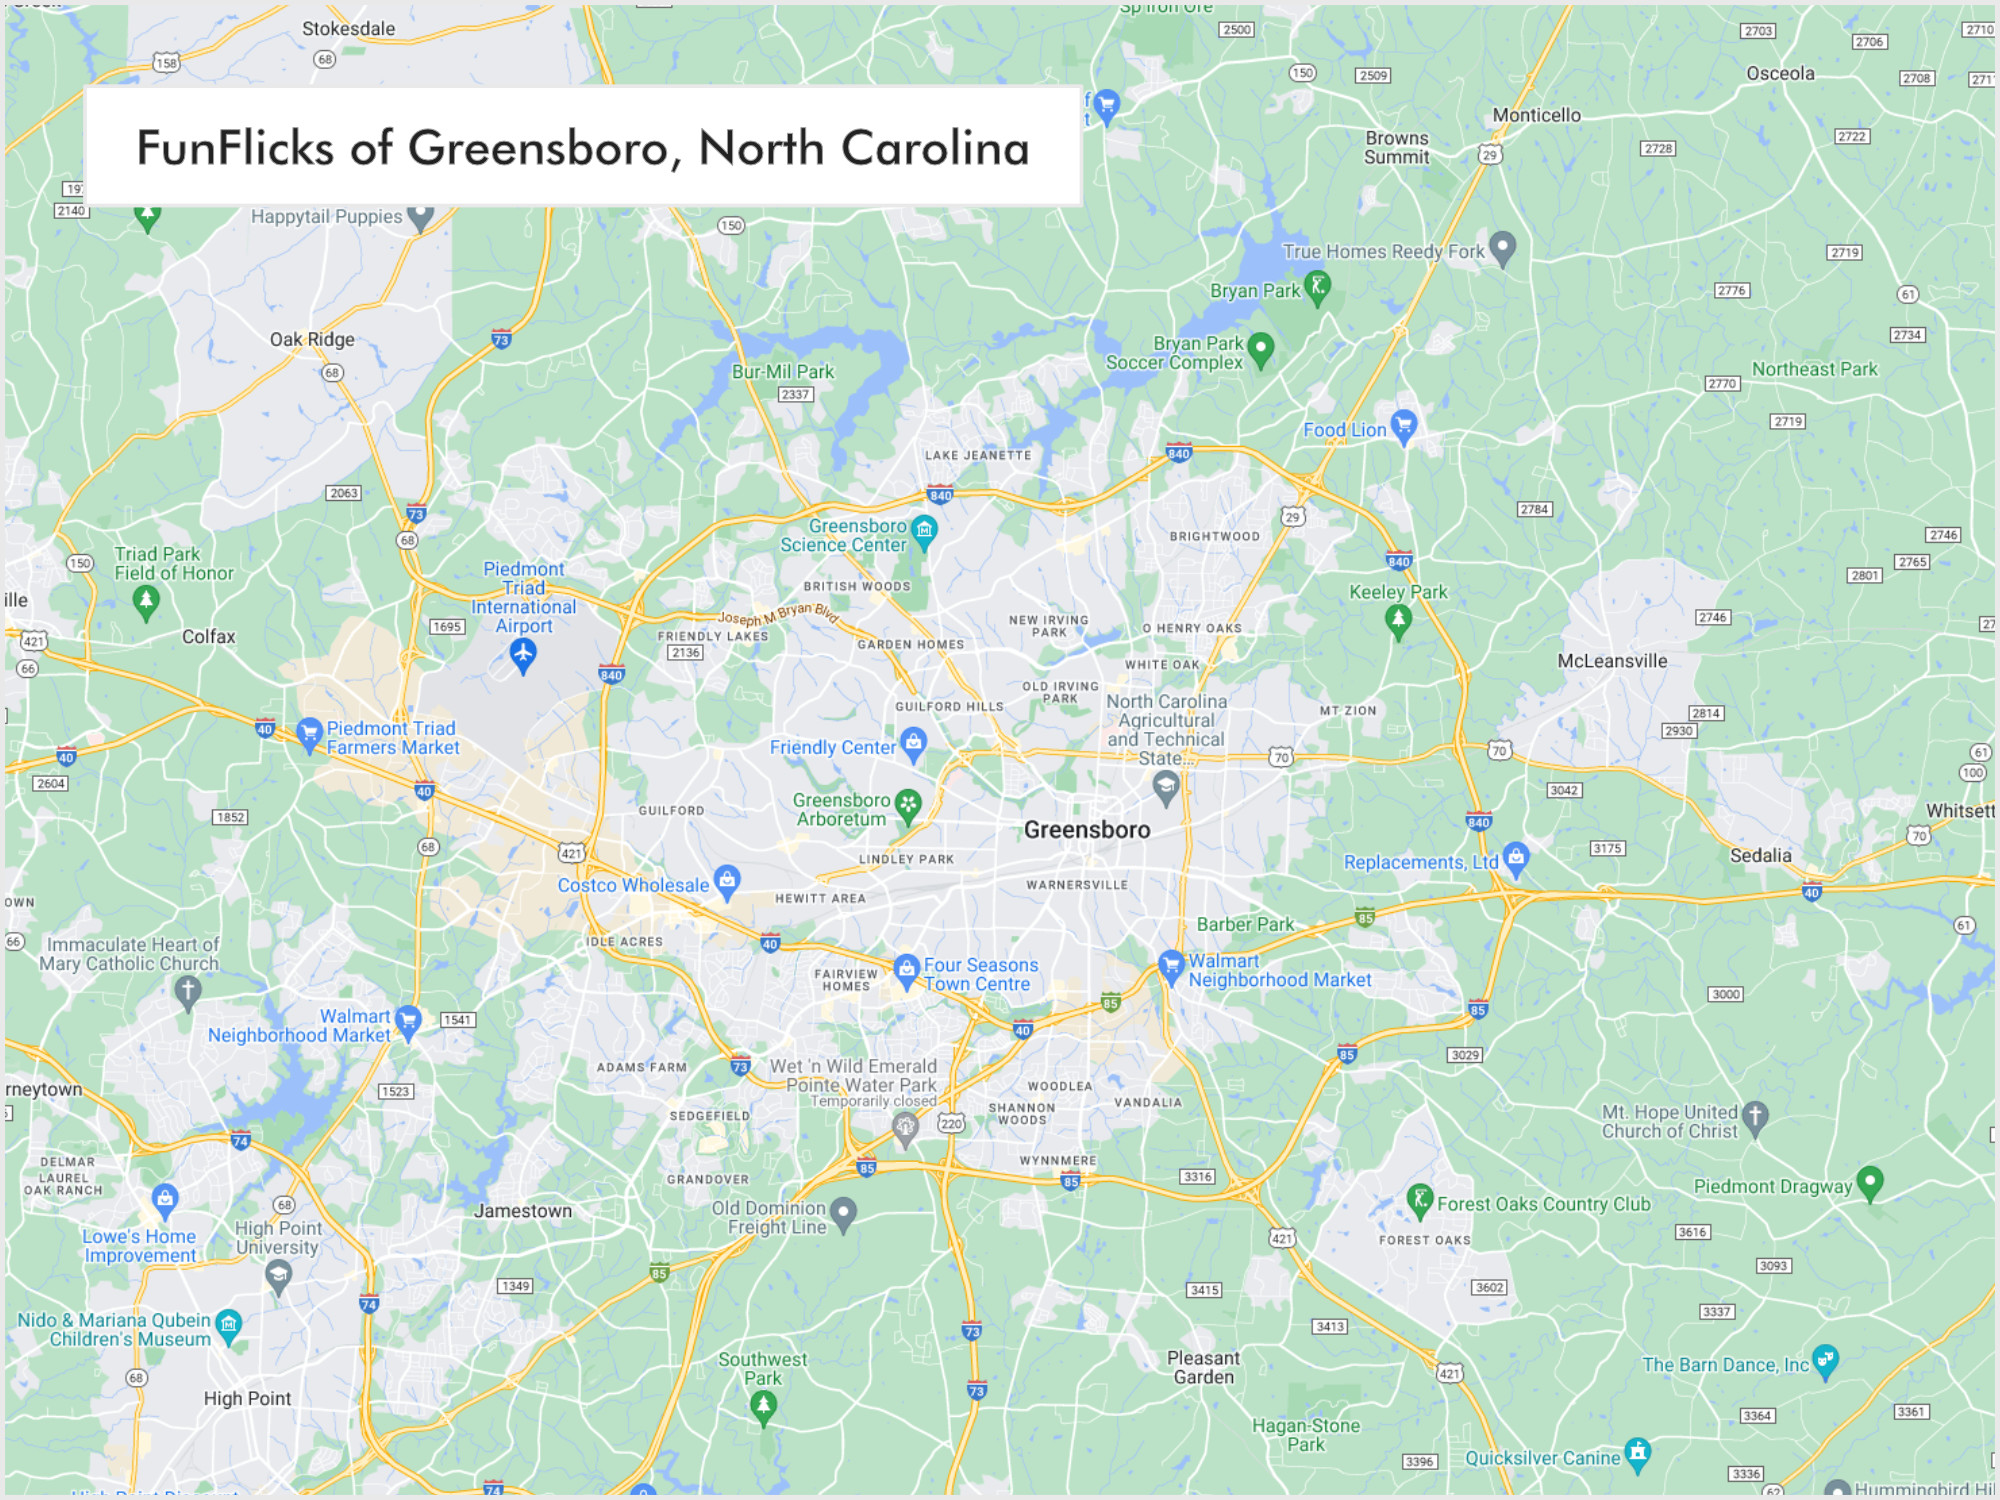 FunFlicks® Greensboro territory map